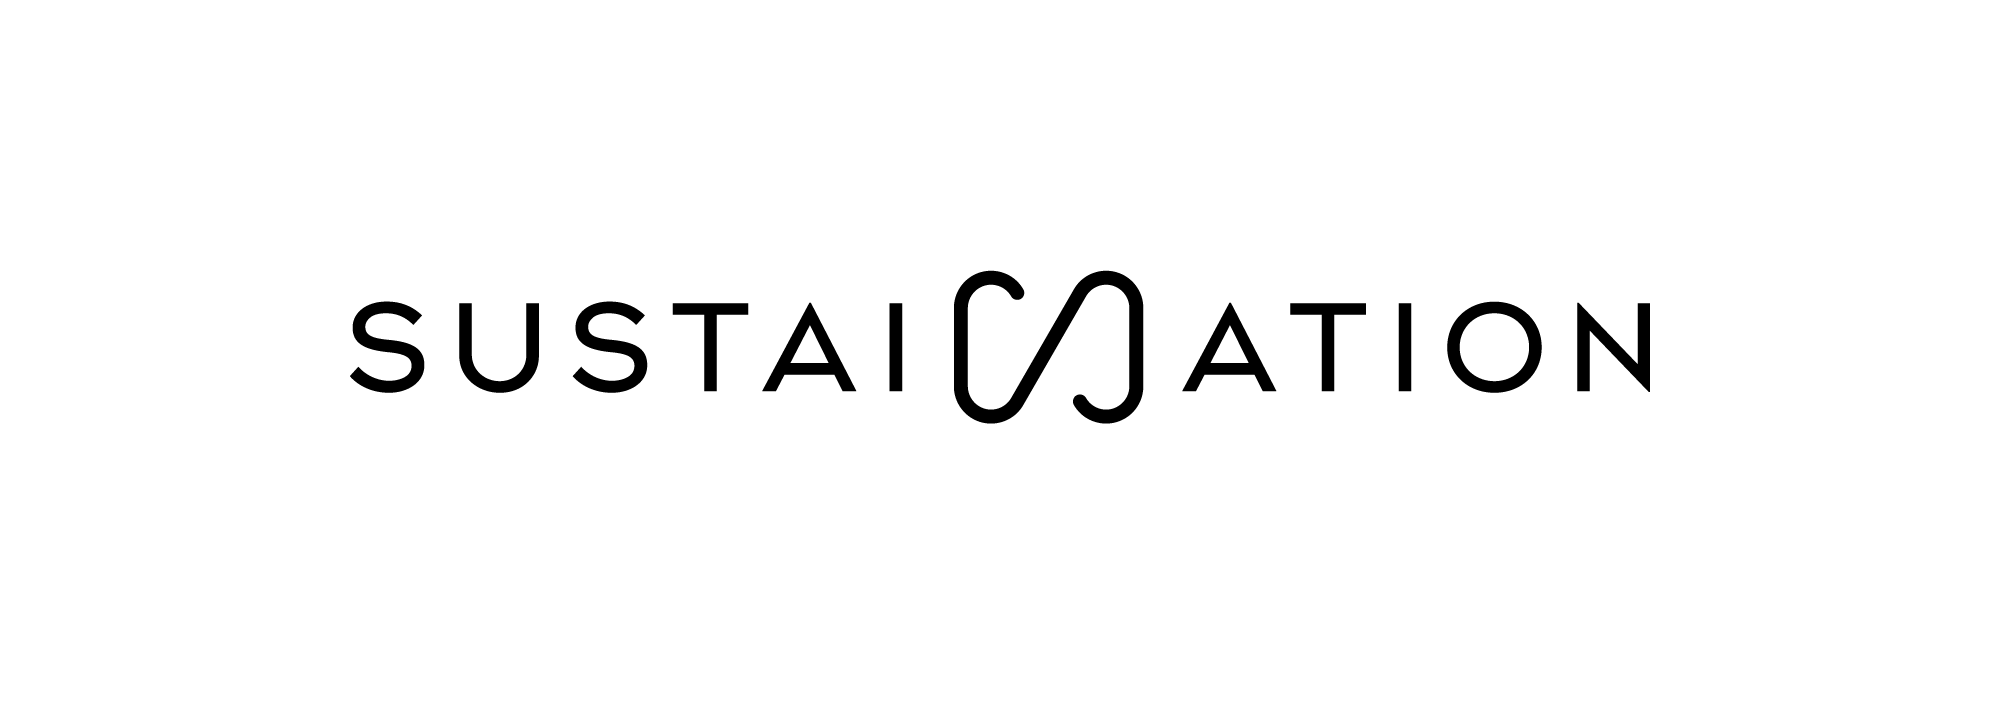 Logo Sustaination black